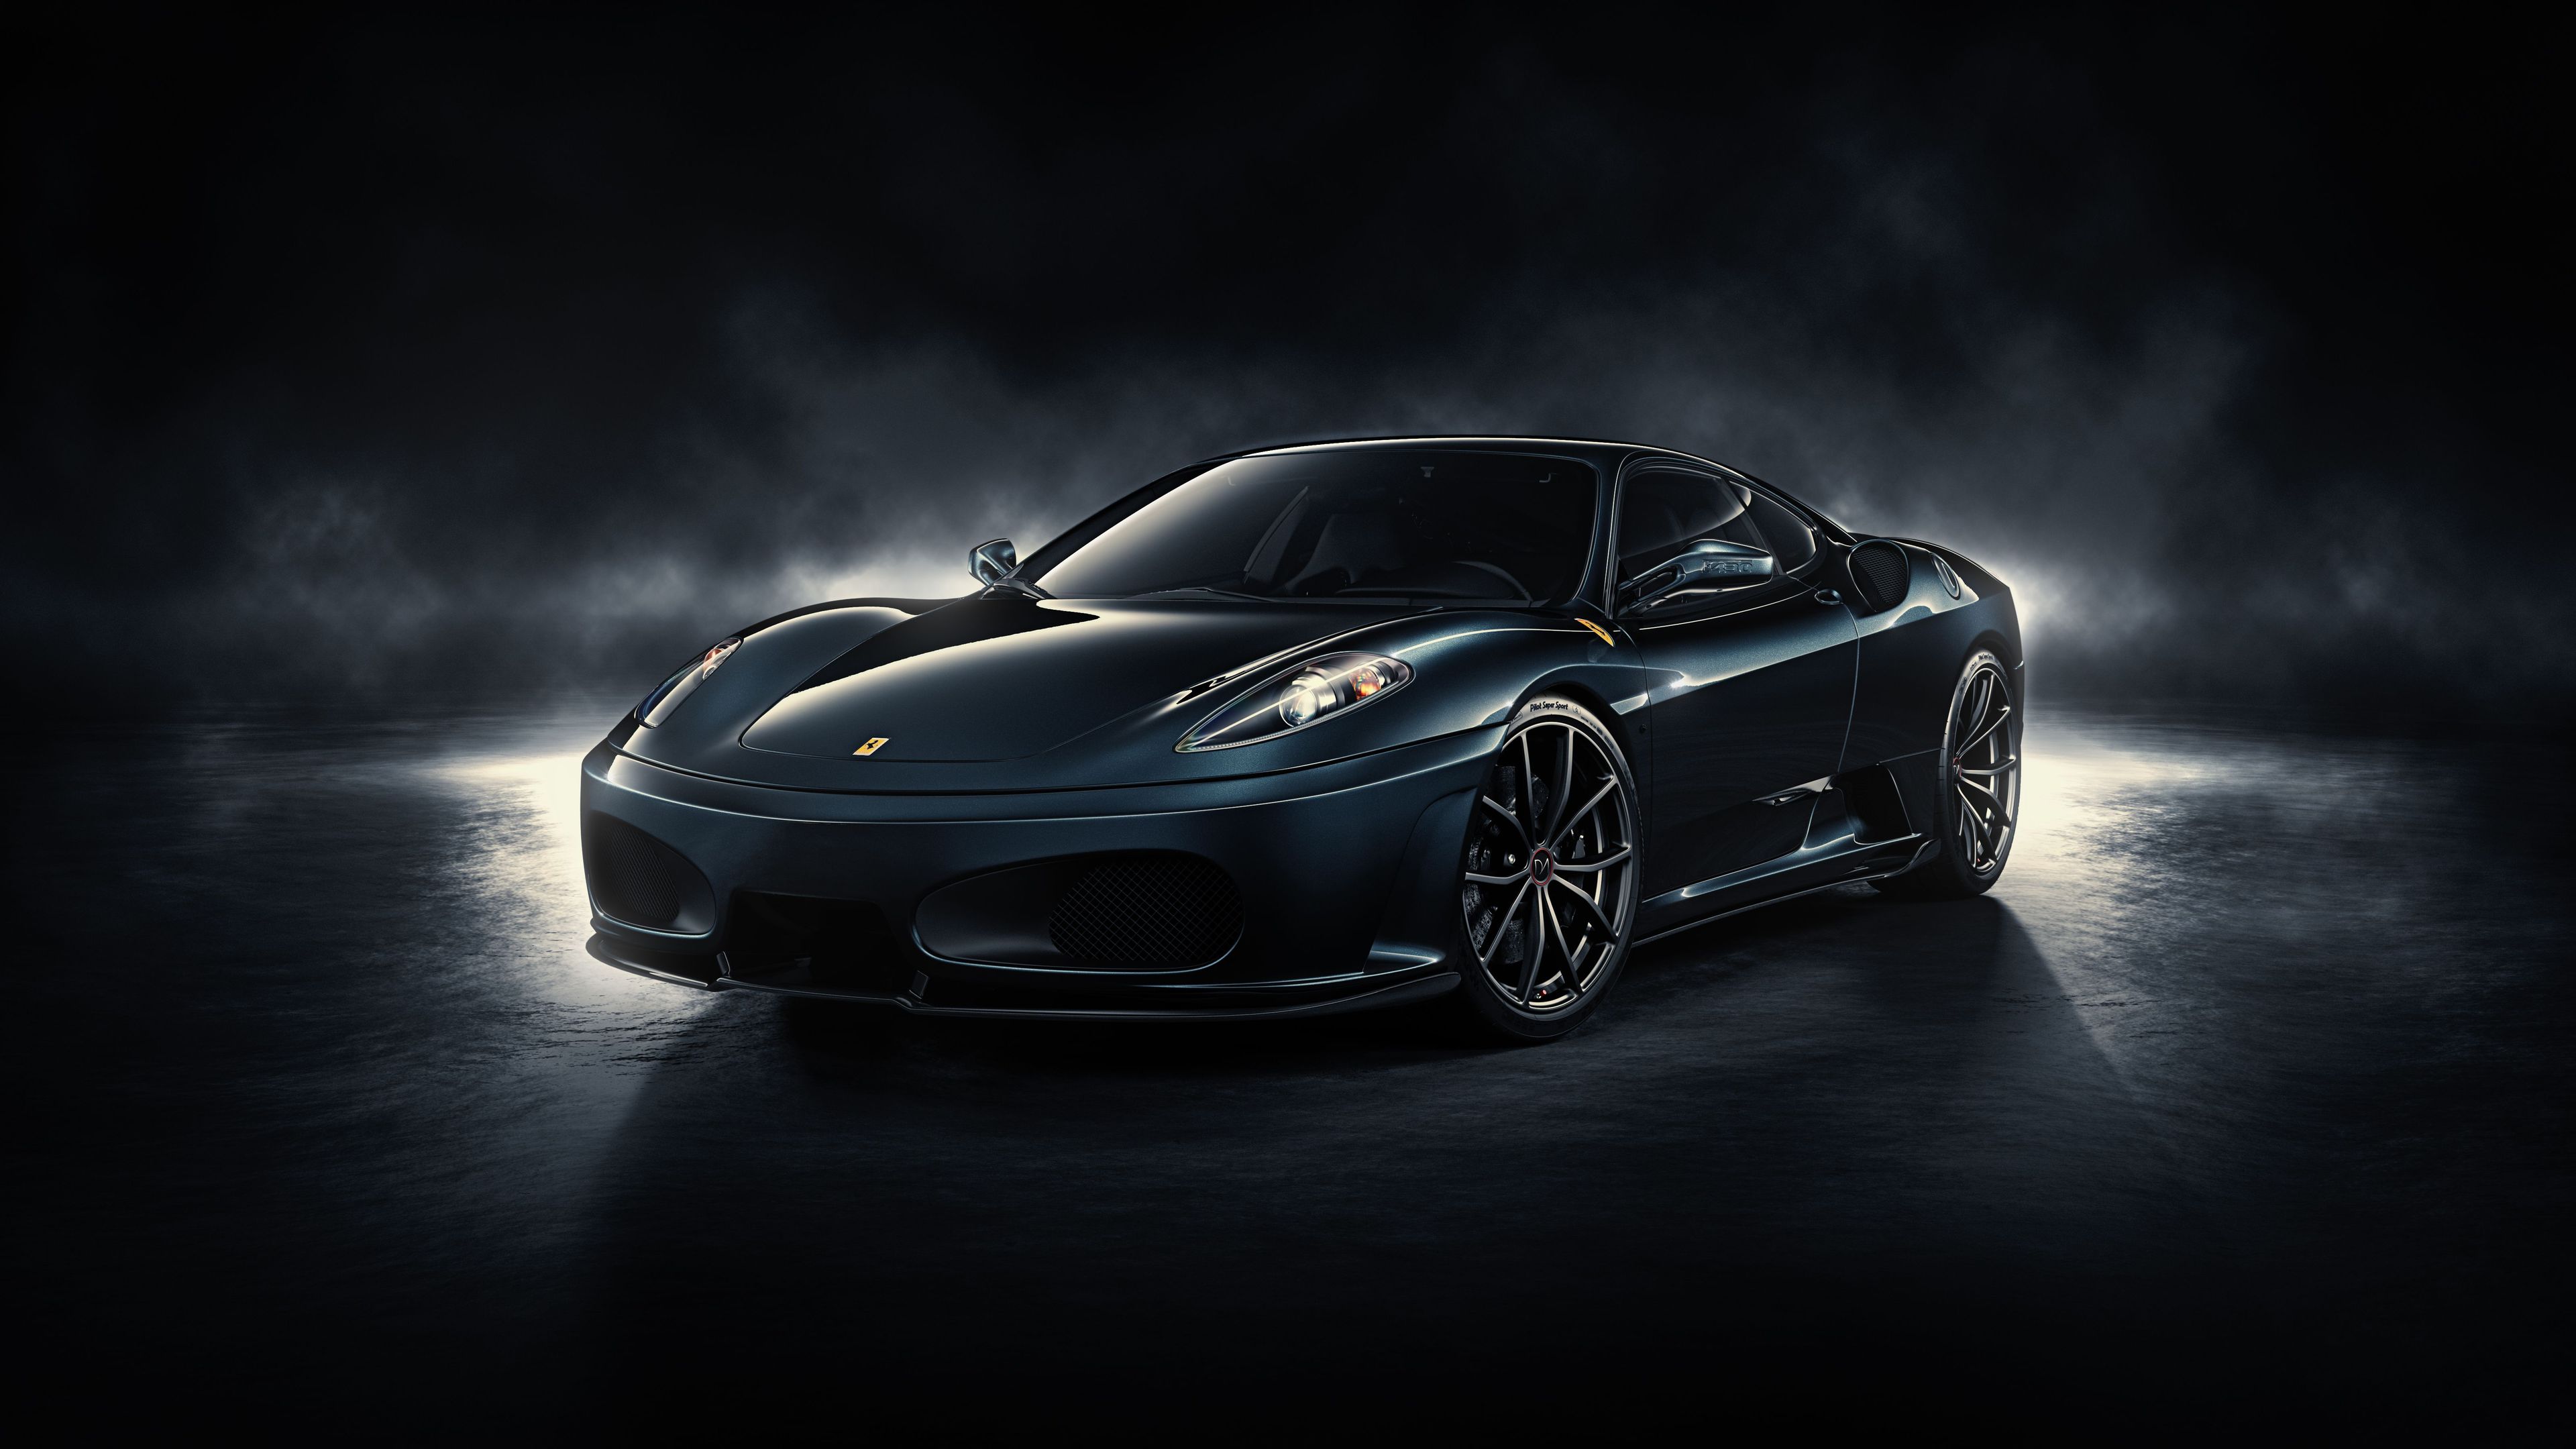 Fondos de pantalla 4k Ferrari 4k 2019 fondos de pantalla 4k, fondos de pantalla de autos, ferrari